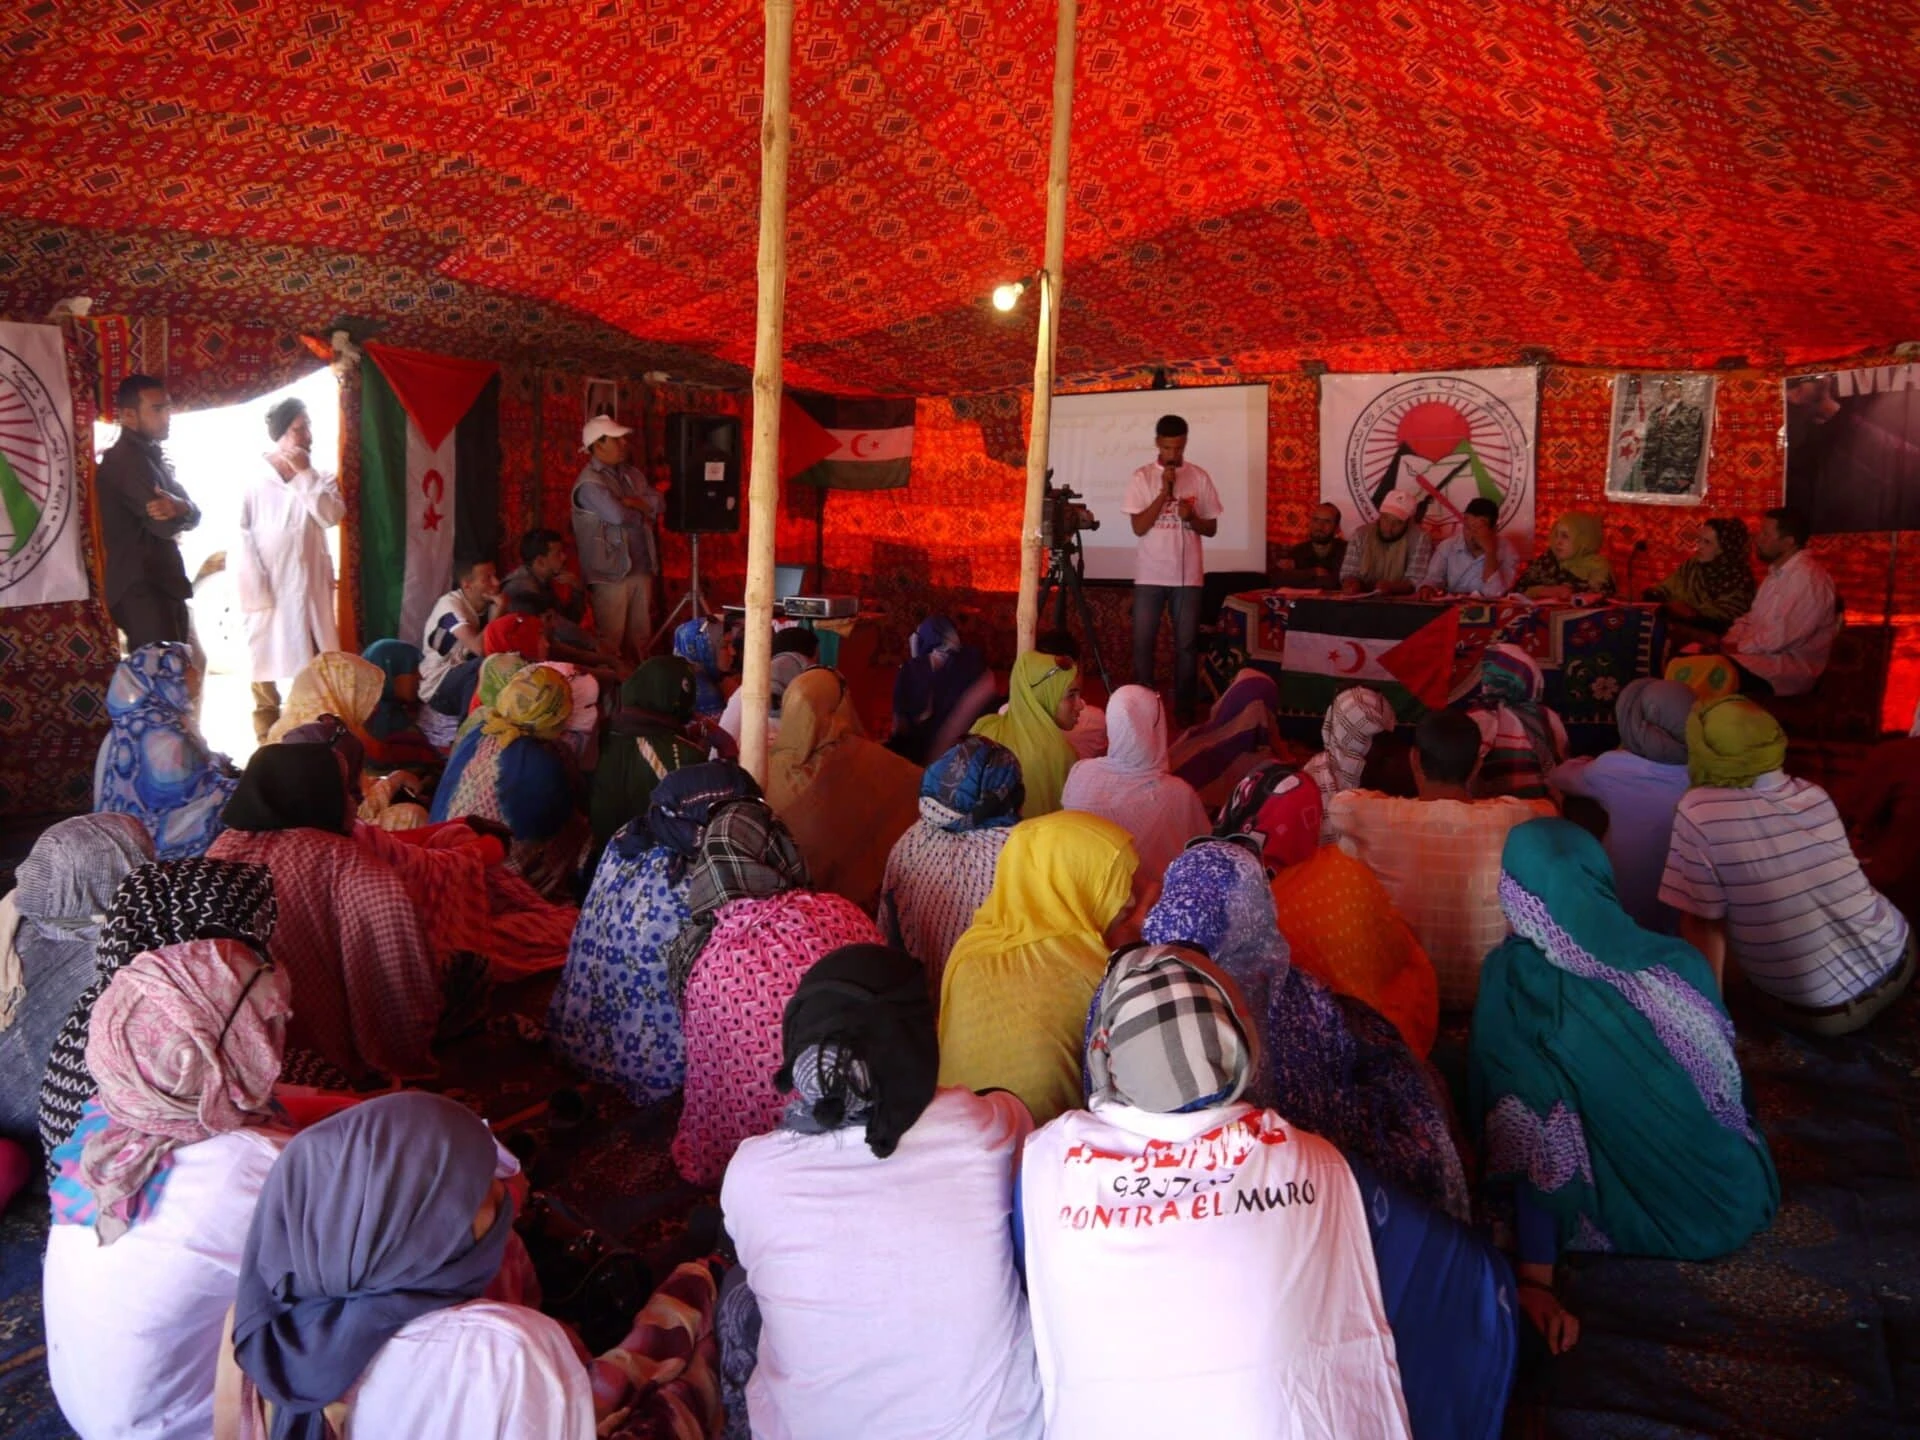 Dutzende Menschen sitzen im einem Wüstenzelt am Boden und verfolgen eine Veranstaltung.